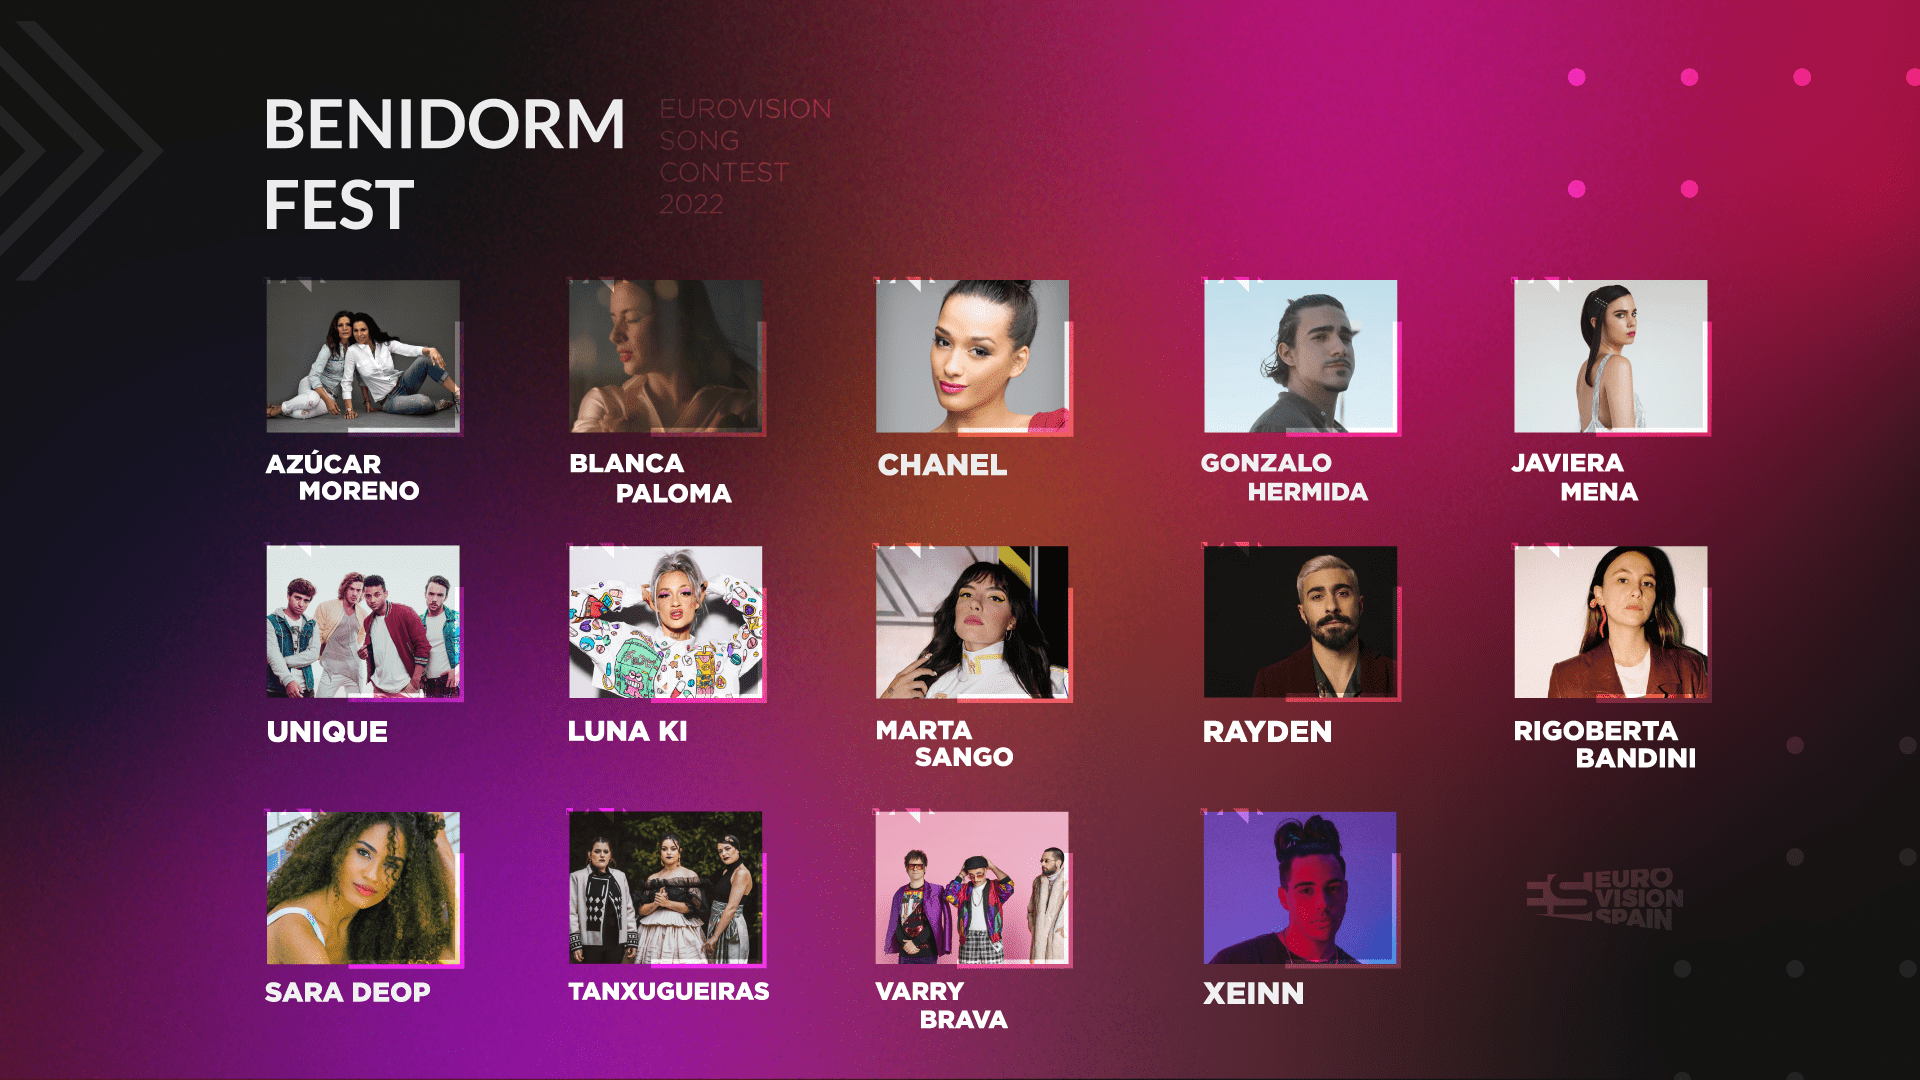 ¡Estos son los 14 participantes del Benidorm Fest 2022! eurovision